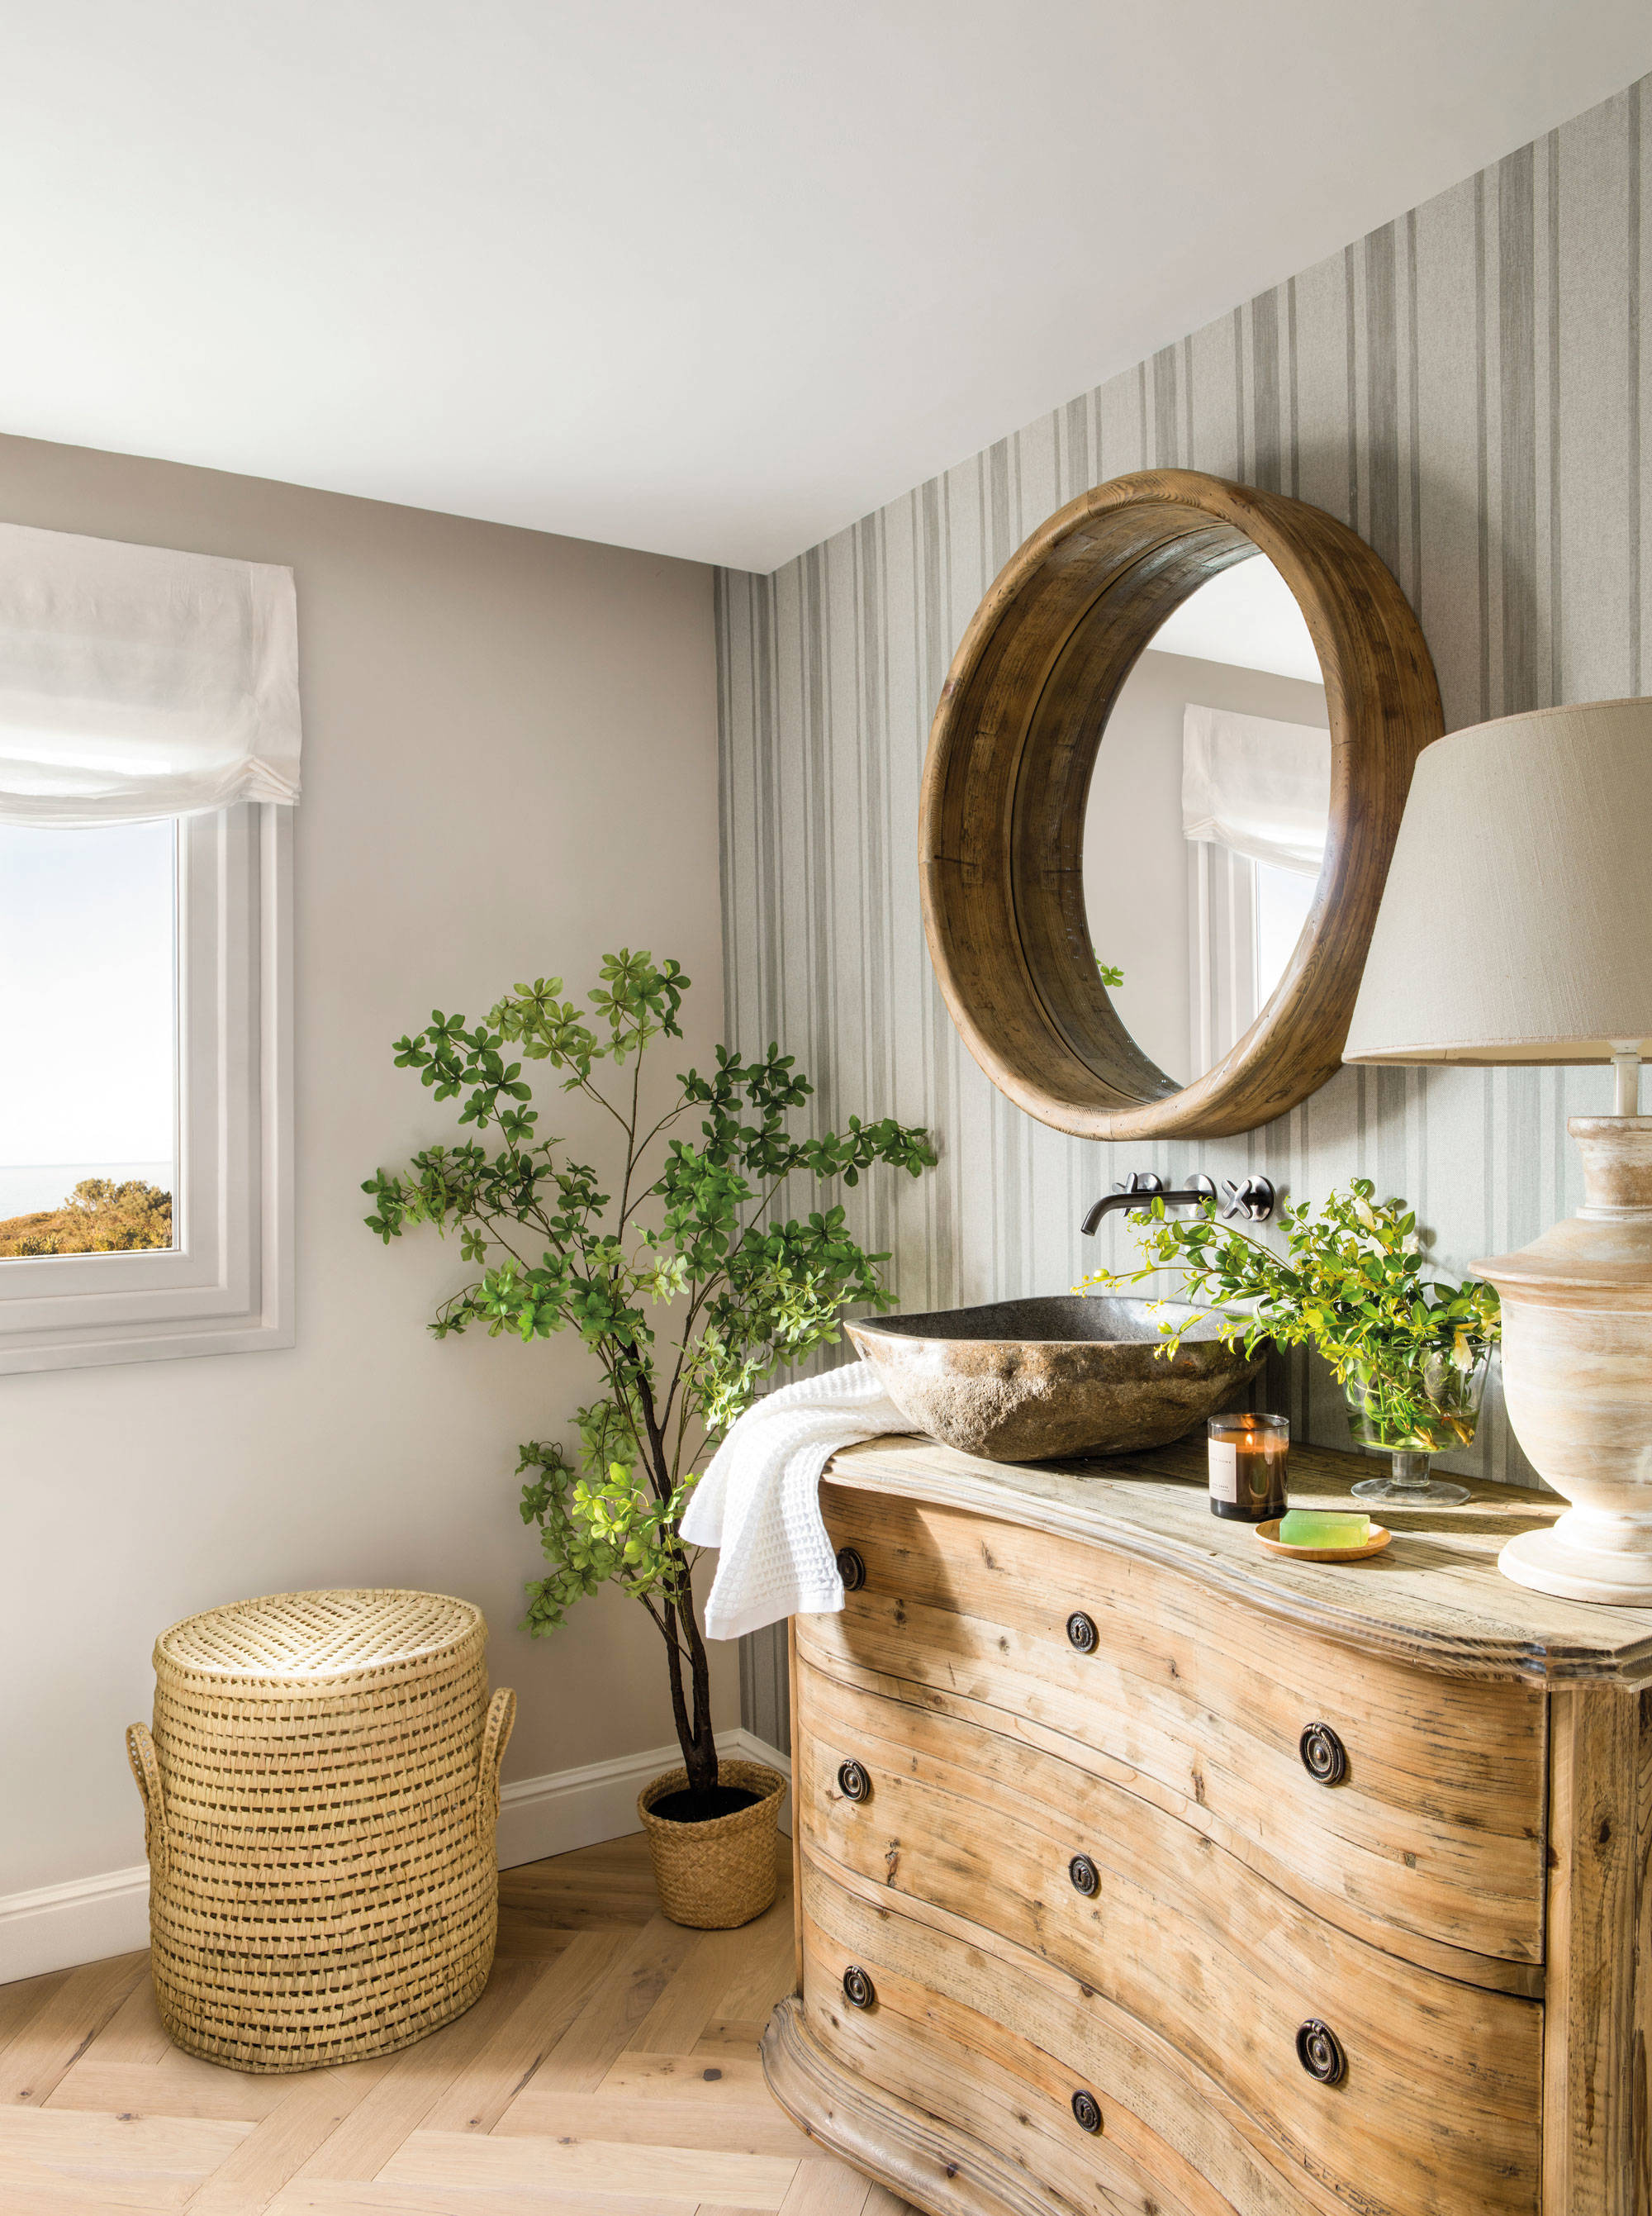 Baño de estilo rústico con mueble de madera y espejo redondo. 